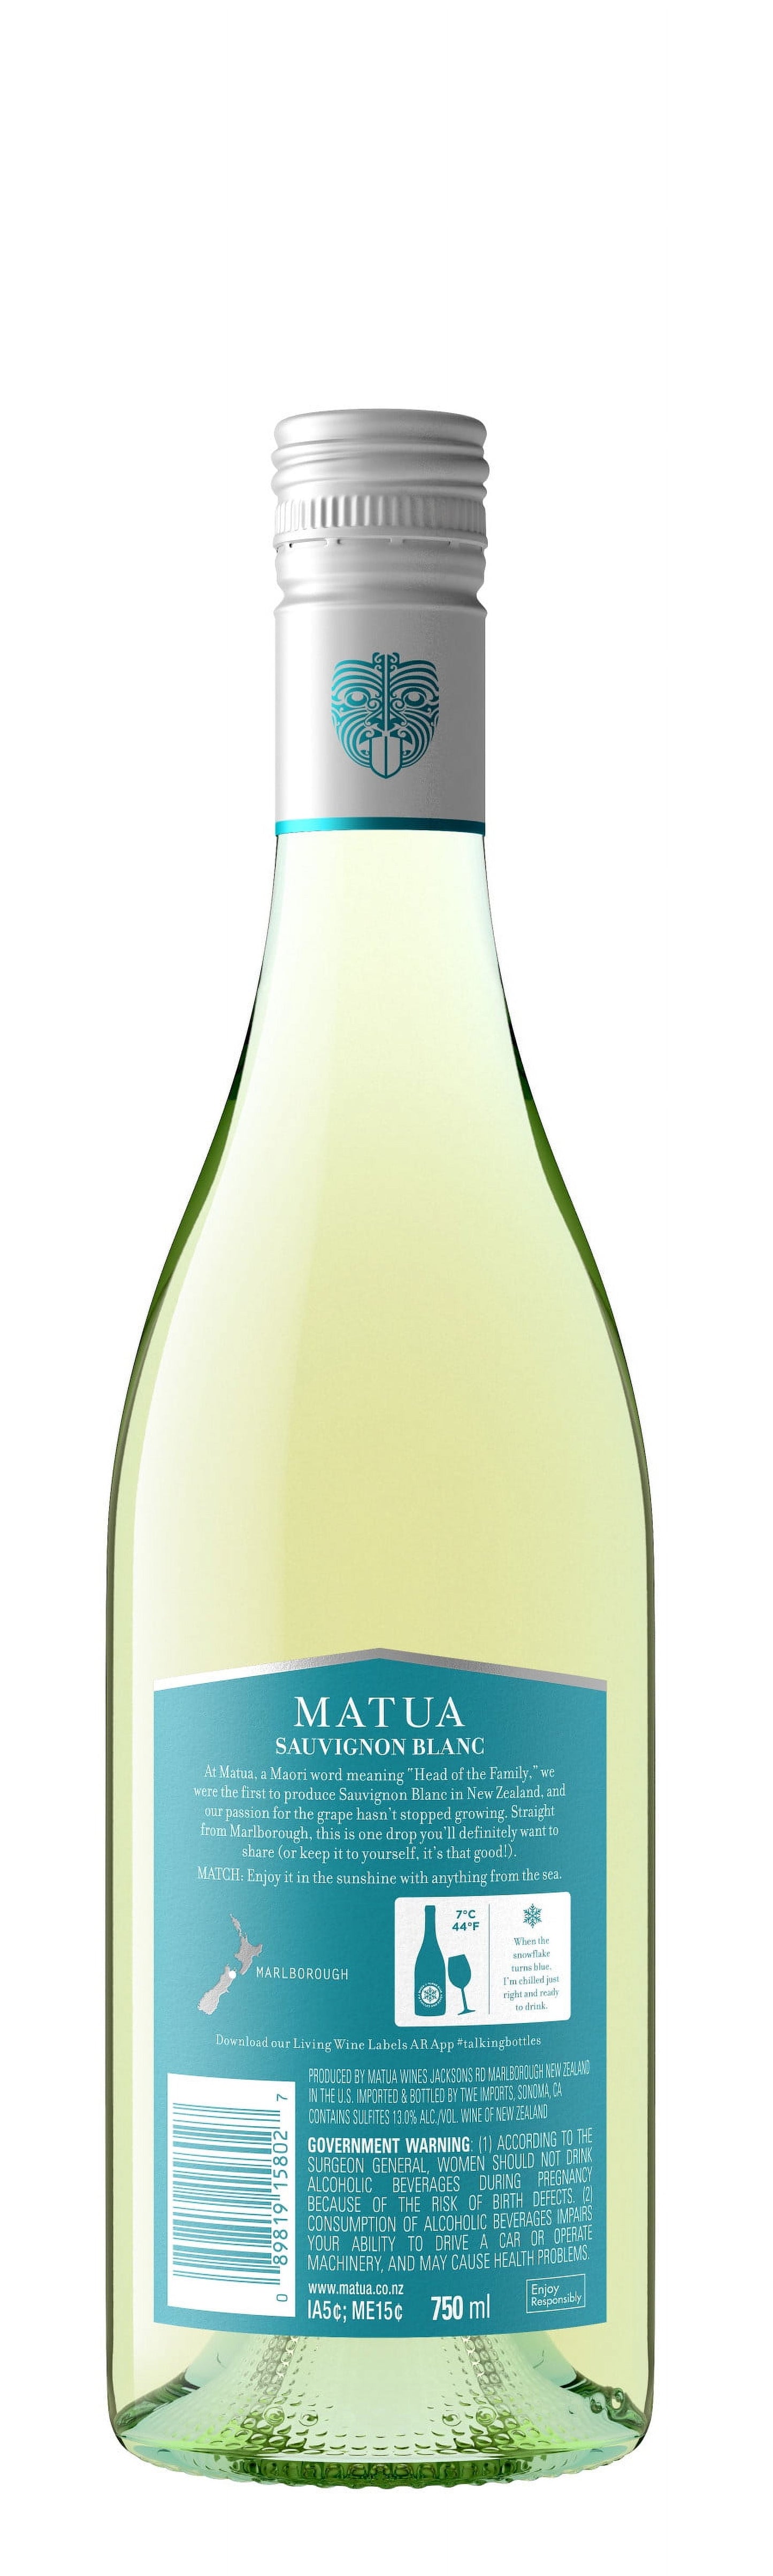 Matua New Zealand Sauvignon Blanc White Wine, 750ml Bottle, 13% ABV